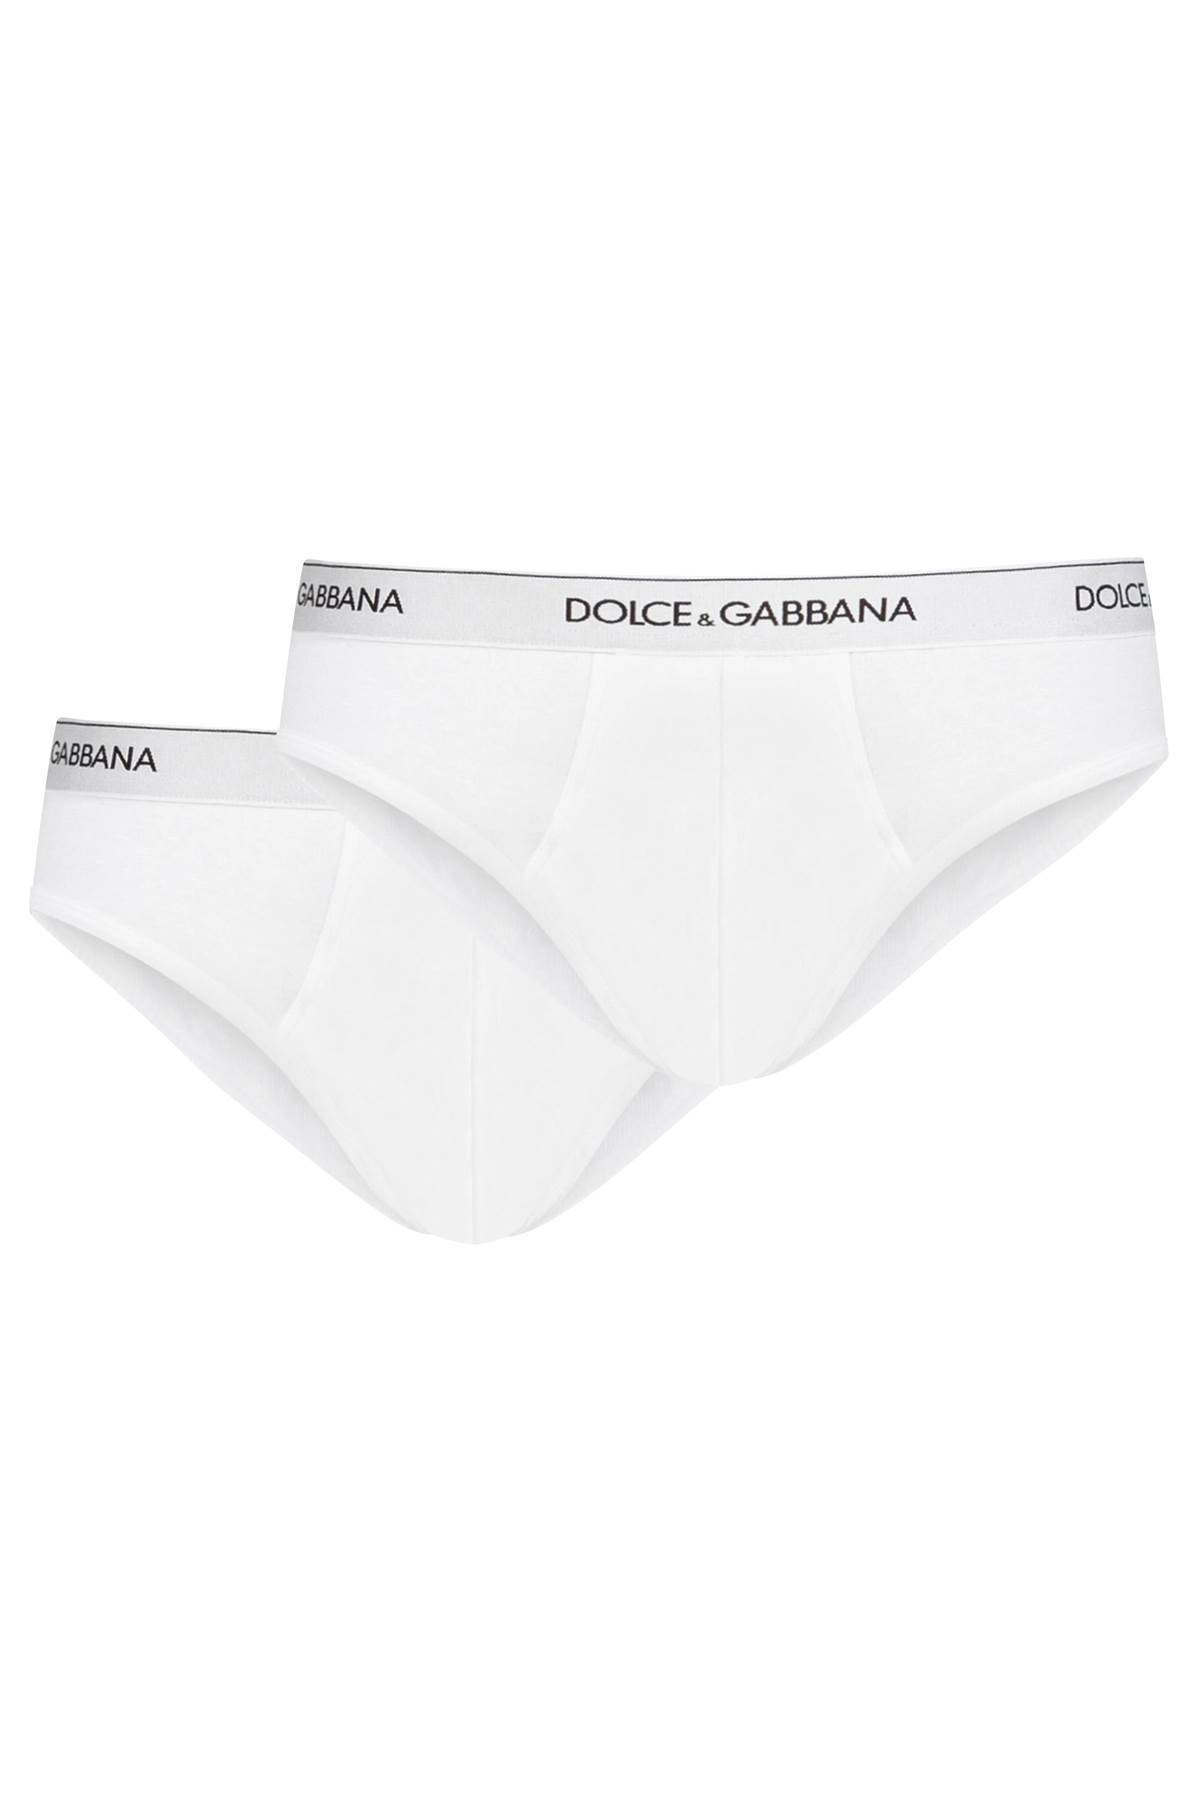 Dolce & Gabbana DOLCE & GABBANA underwear briefs bi-pack